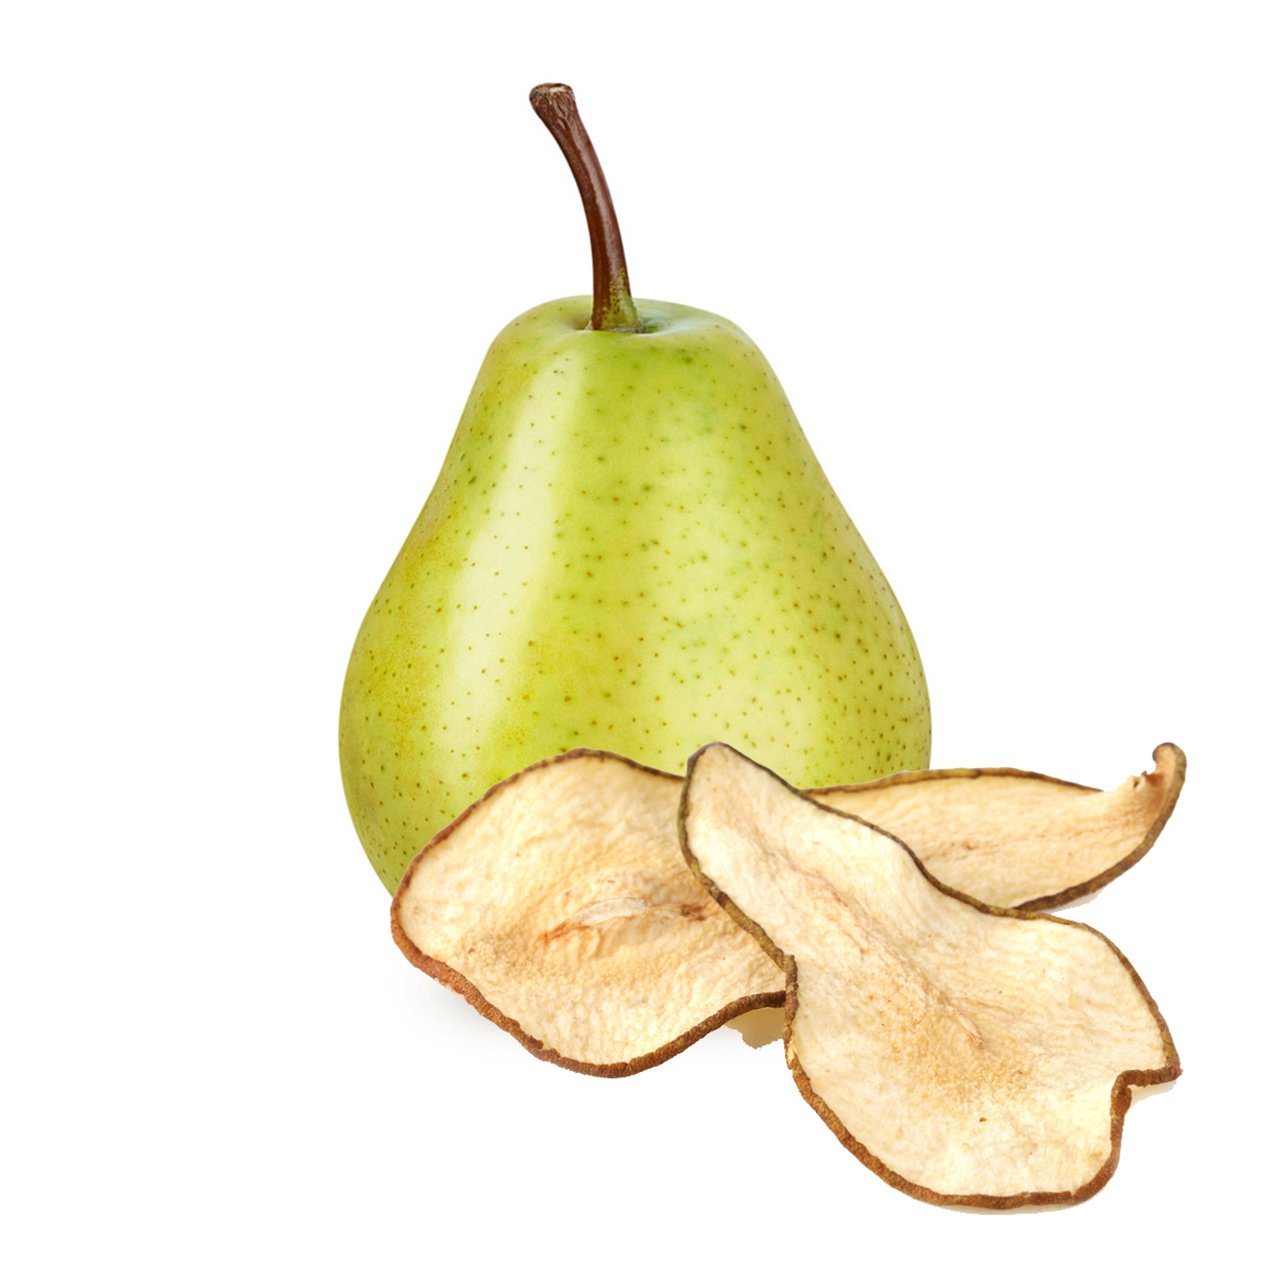 Pear Chips - Fruit Chips - Fruit Chips - Dried Fruit Chips